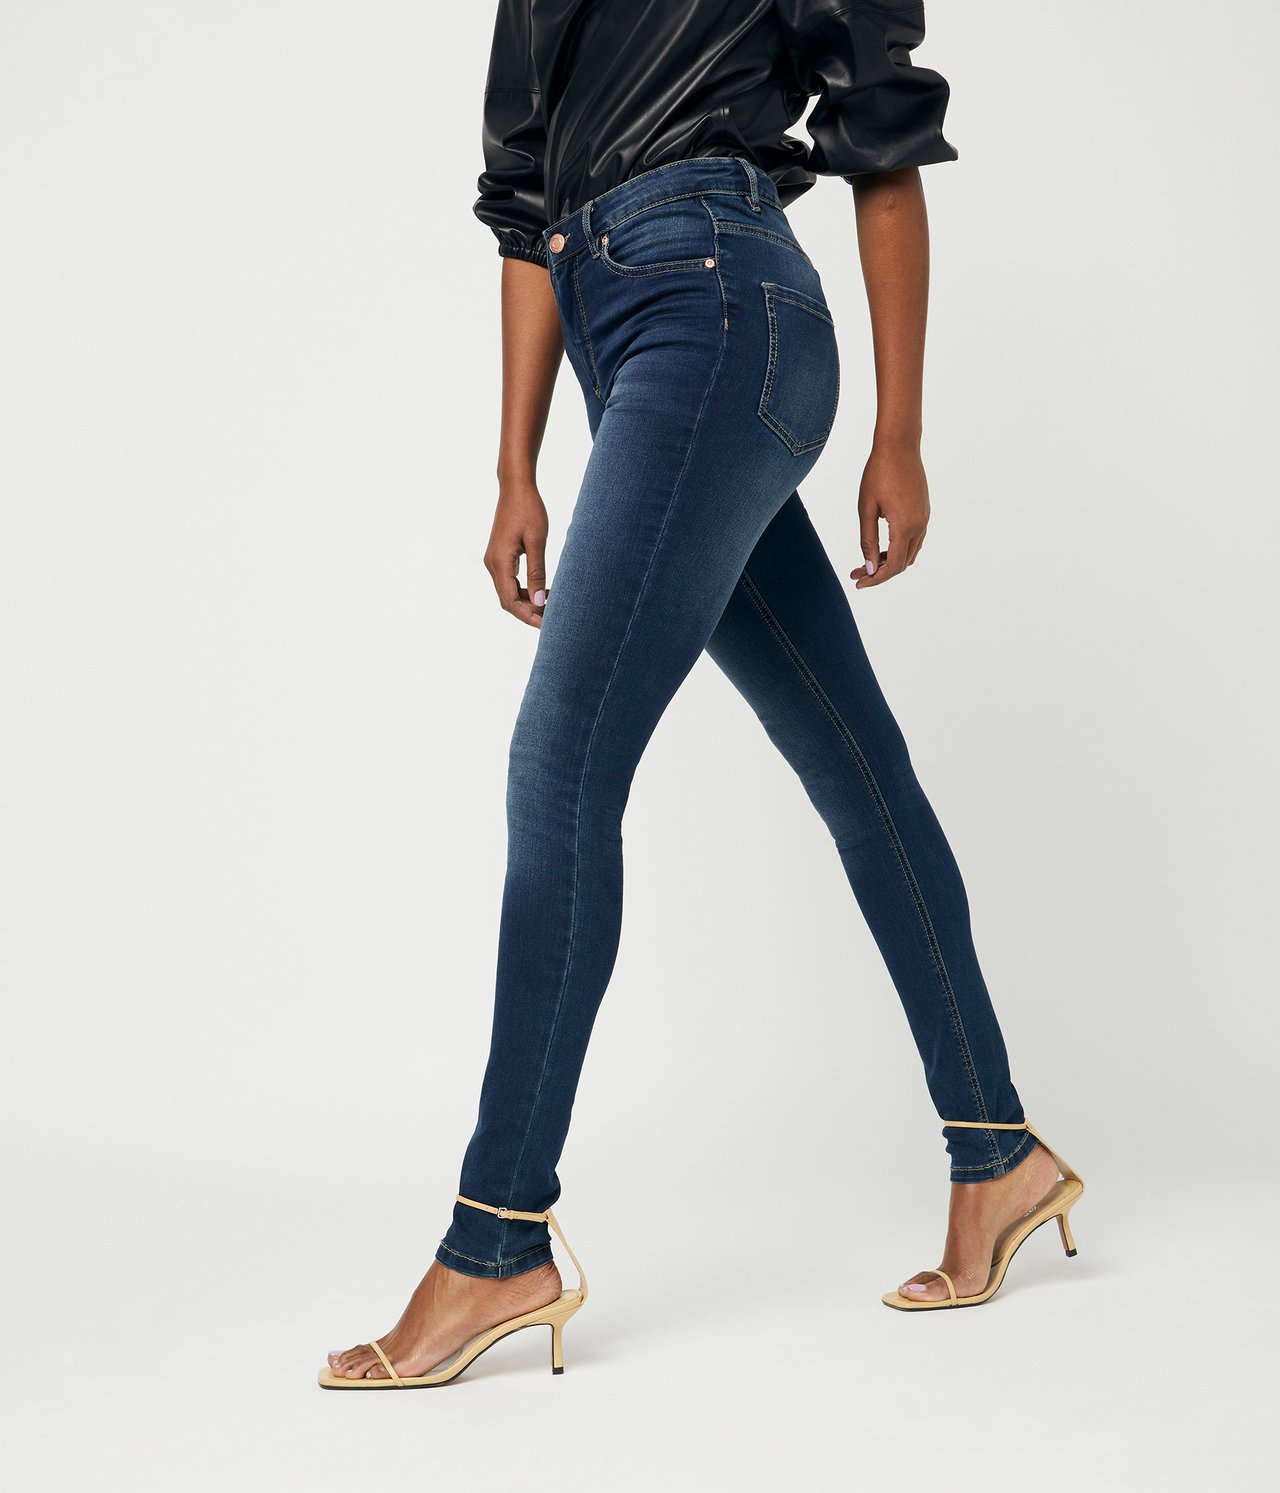 Super slim jeans extra long leg Mørk denim - null - 4